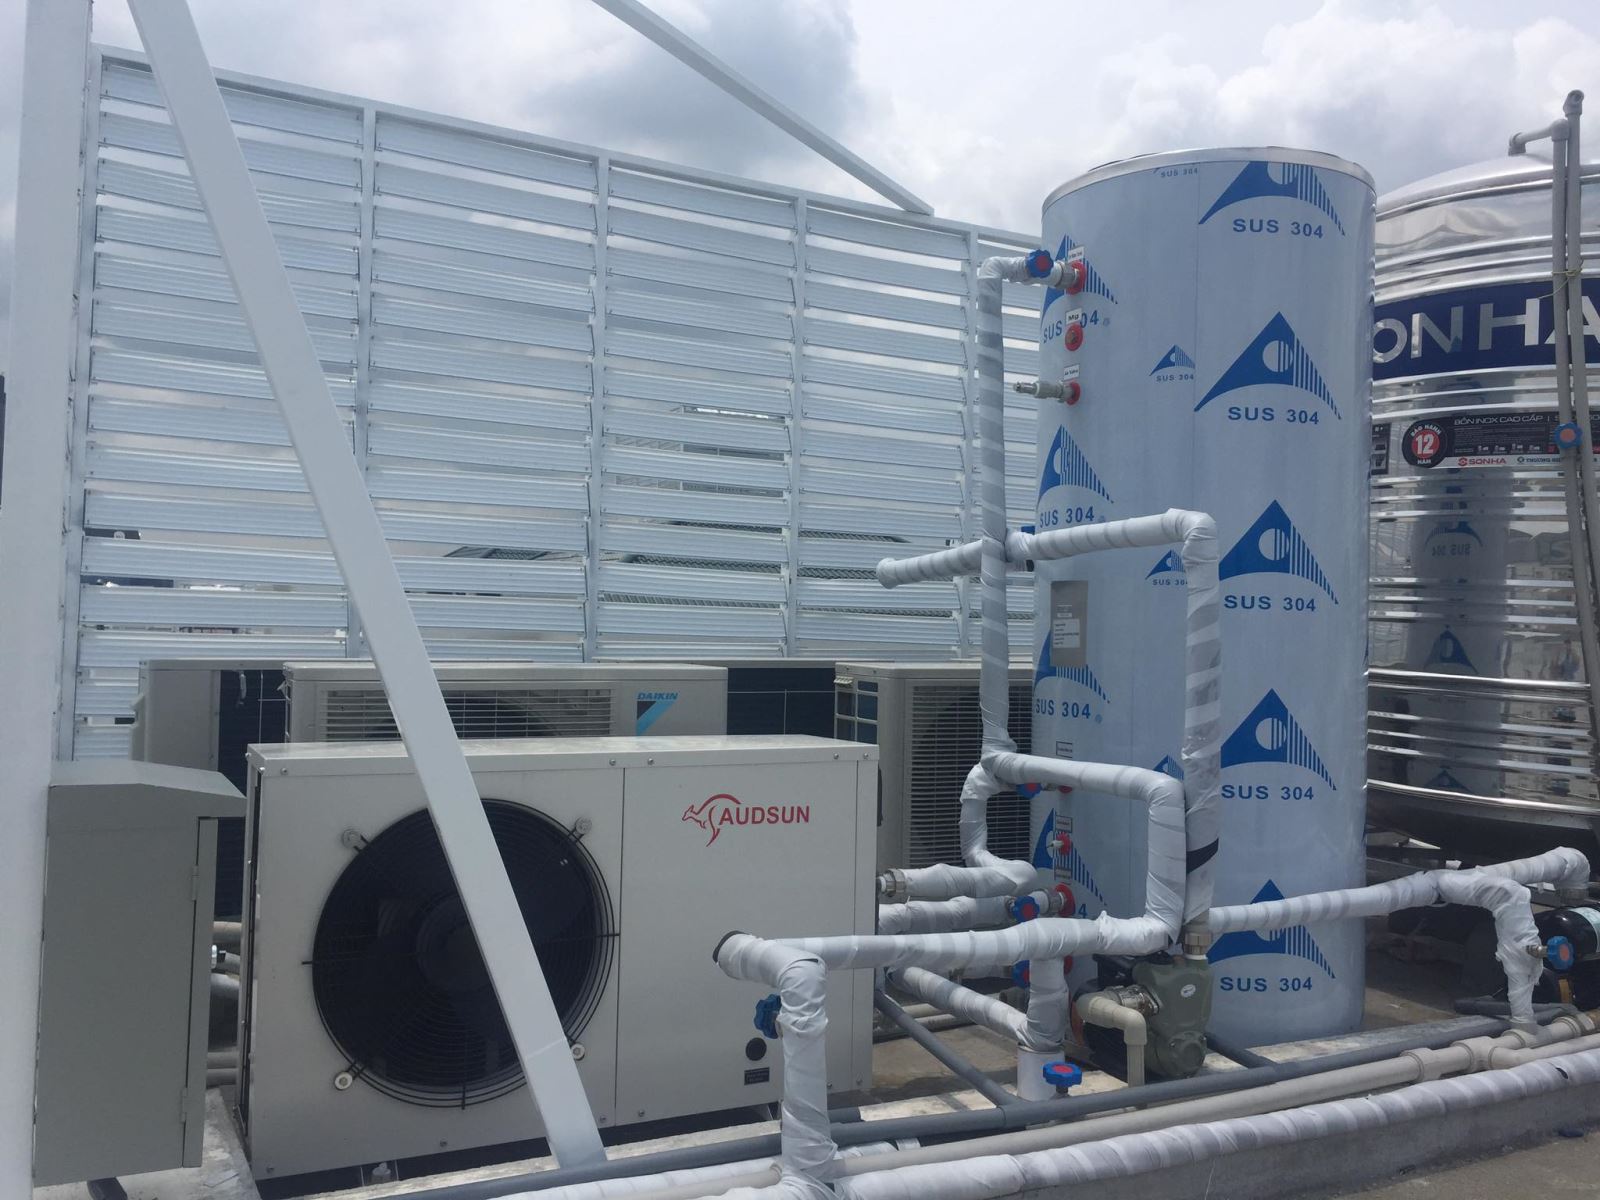 Nhà thầu Cung cấp lắp đặt nước nóng trung tâm chuyên nghiệp tại Hải Phòng - Ảnh 2